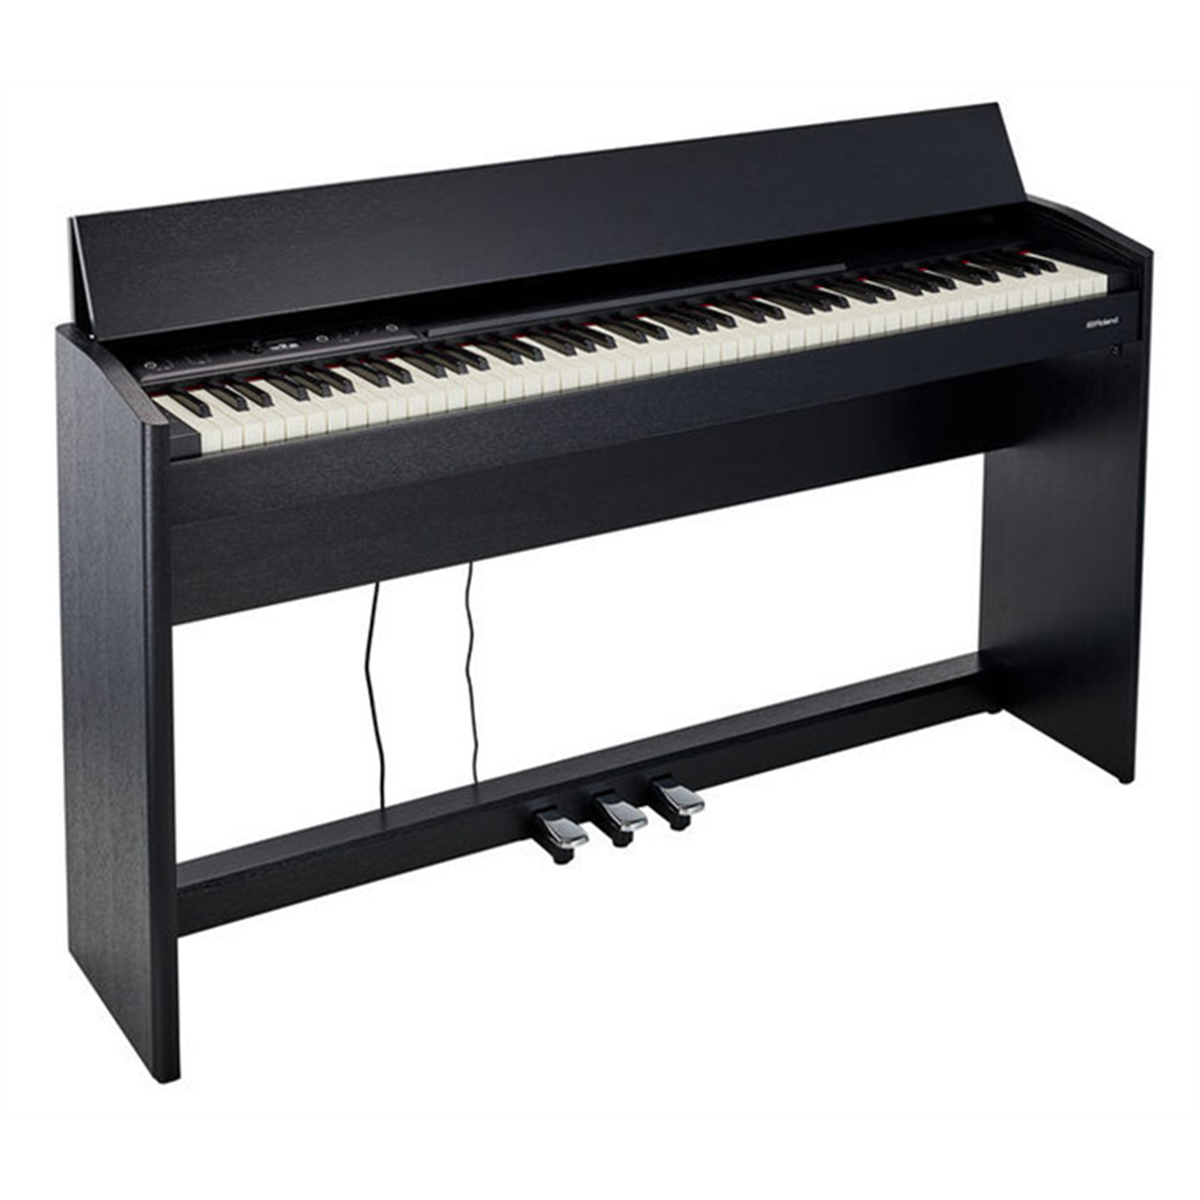 PIANO ROLAND F 701  Piano Numérique À partir de 1199 €